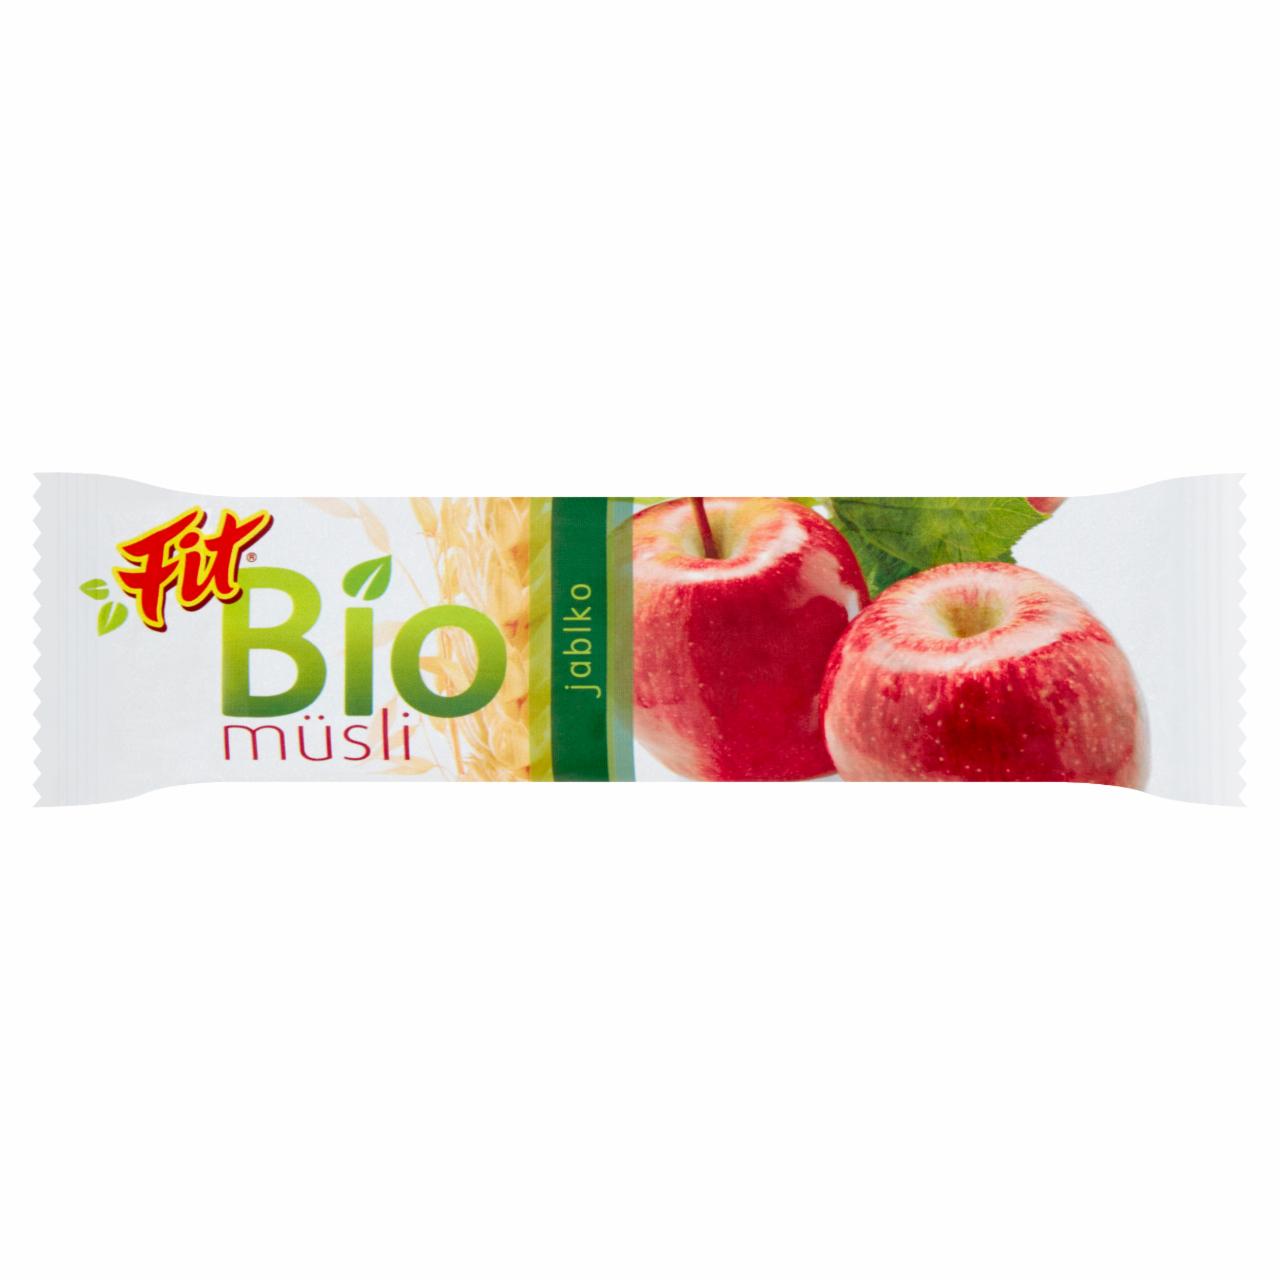 Zdjęcia - Fit Bio baton musli jabłeczny 30 g